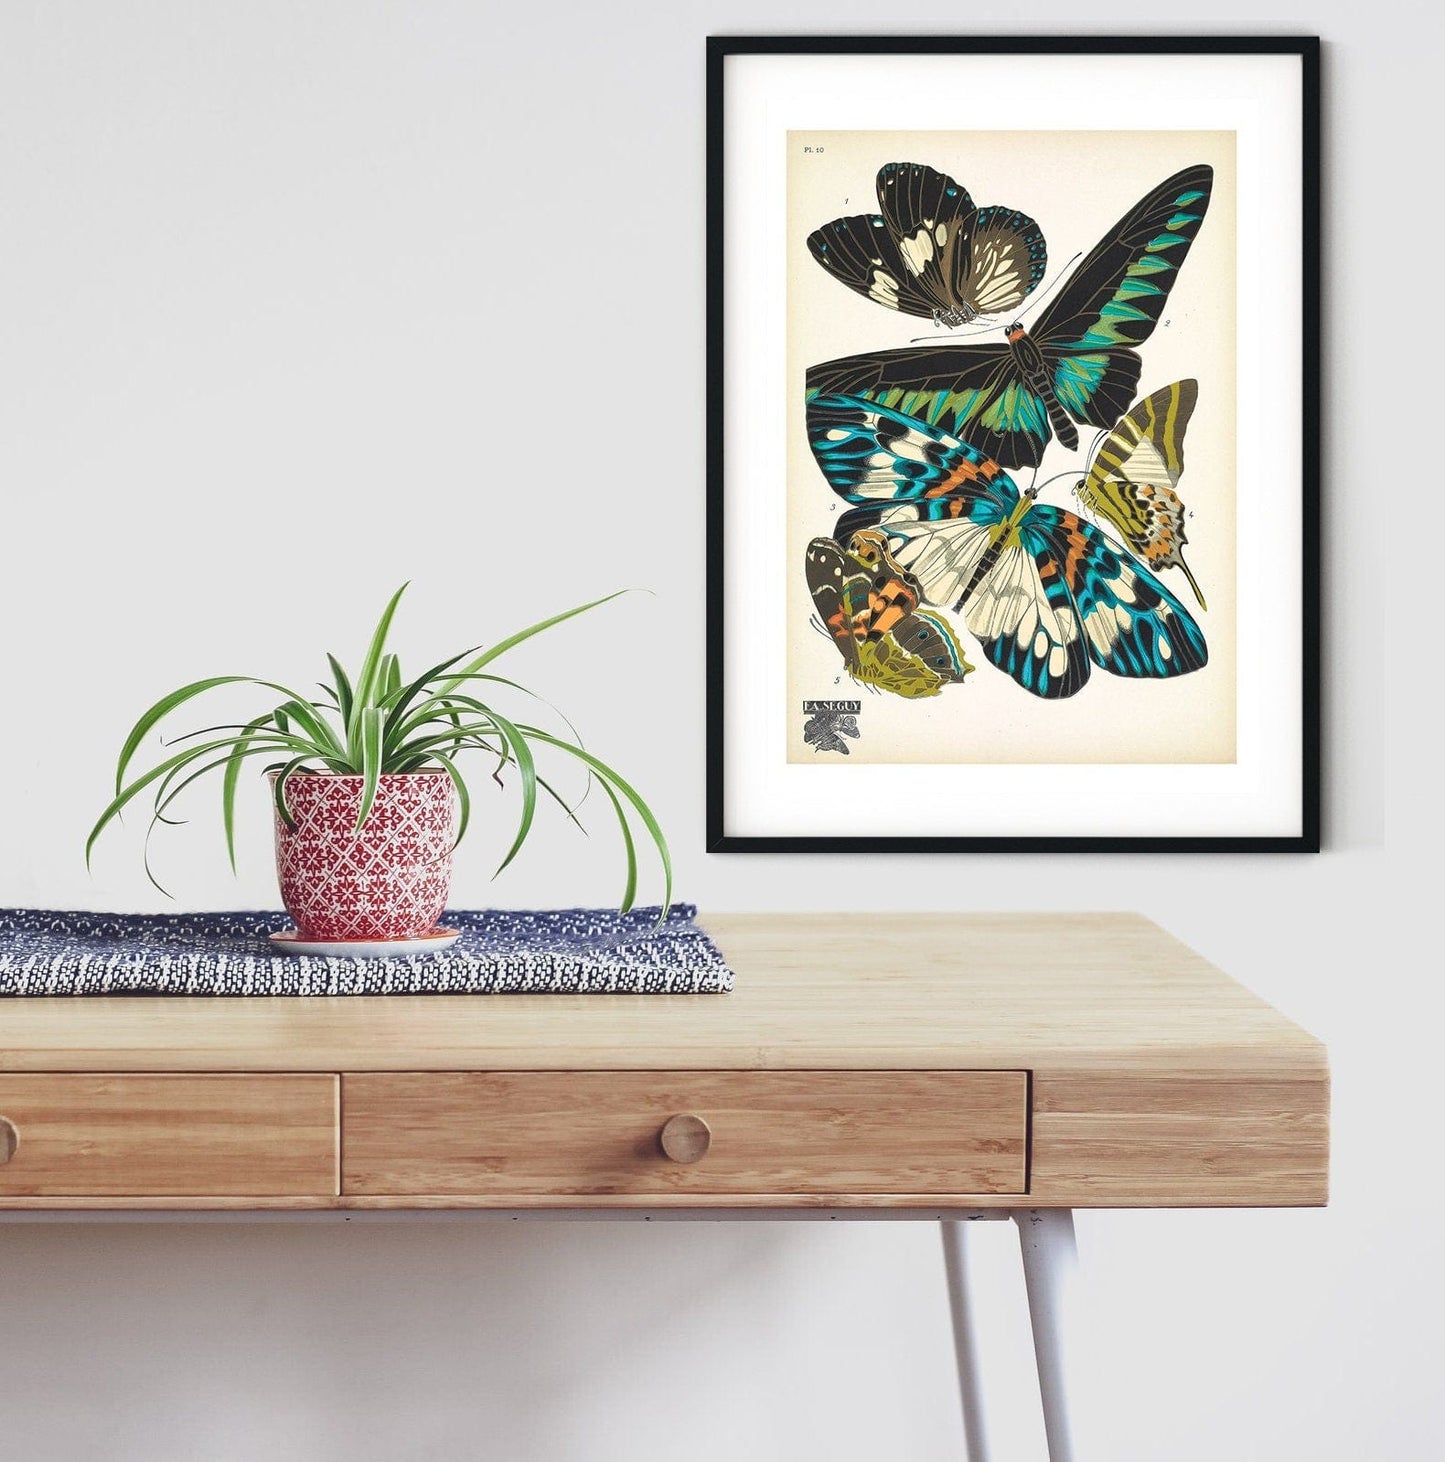 Set of 3 Framed Vintage Butterfly prints, antique butterfly art print art deco prints butterfly wall art antique nature print